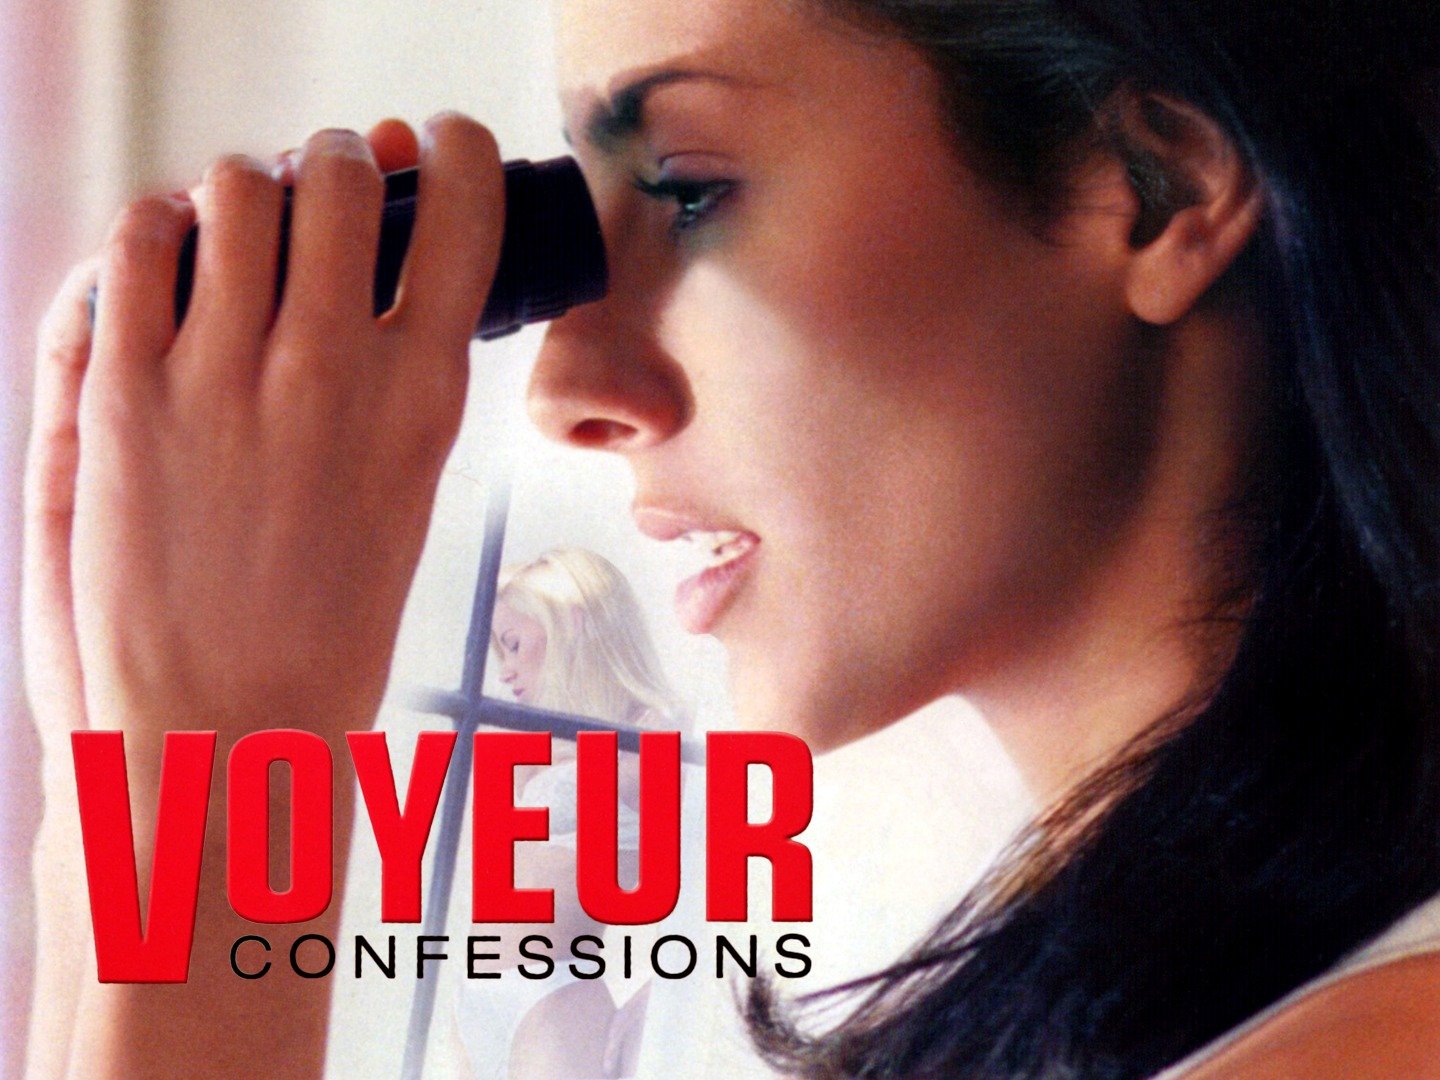 voyeur confessions 2001 torrent Adult Pics Hq